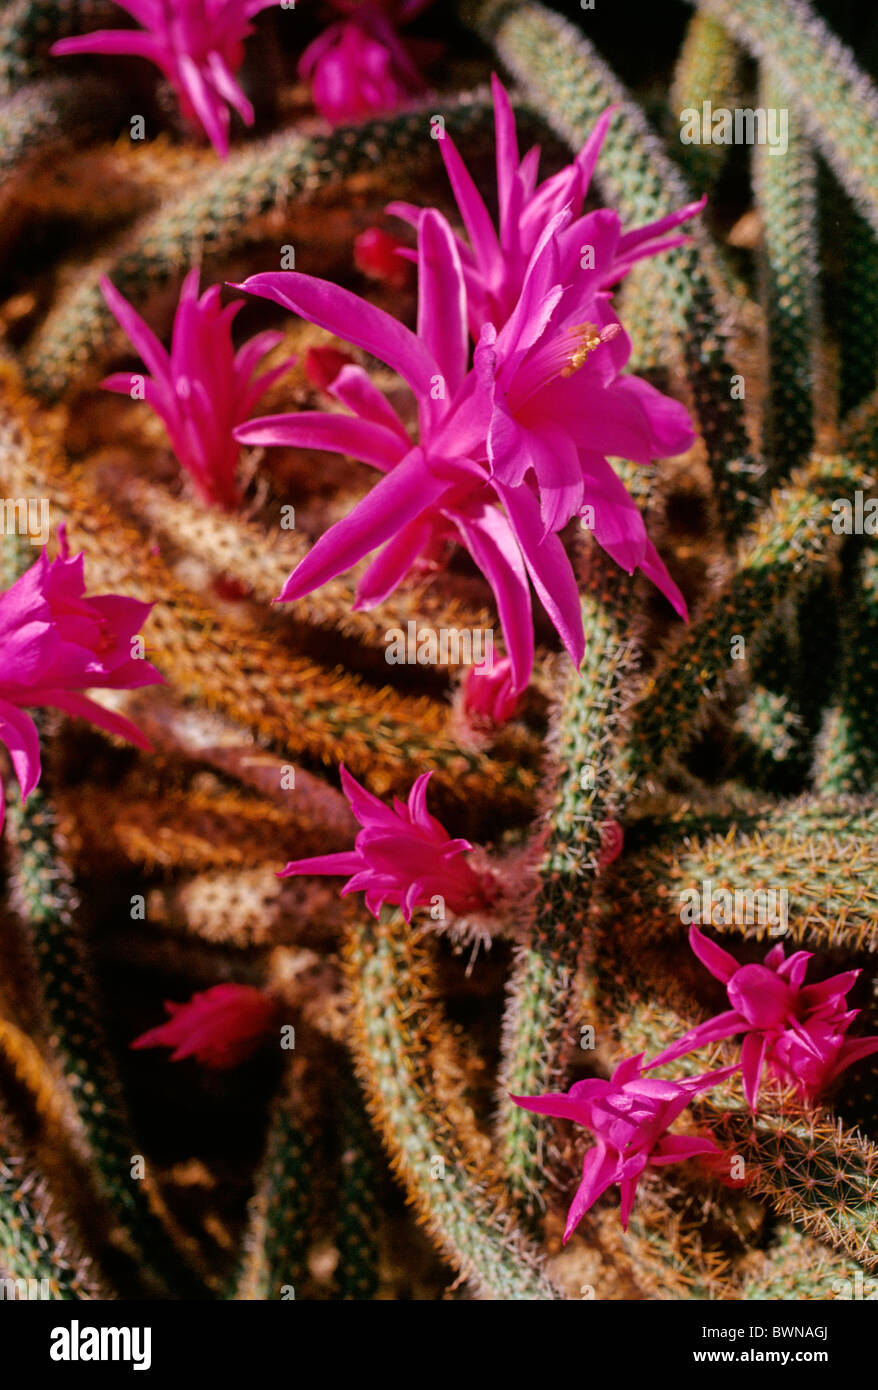 Aporocactus Flagelliformis Rattail Cactus Cactaceae Disocactus flagelliformis cacti flowering flower flowers p Stock Photo